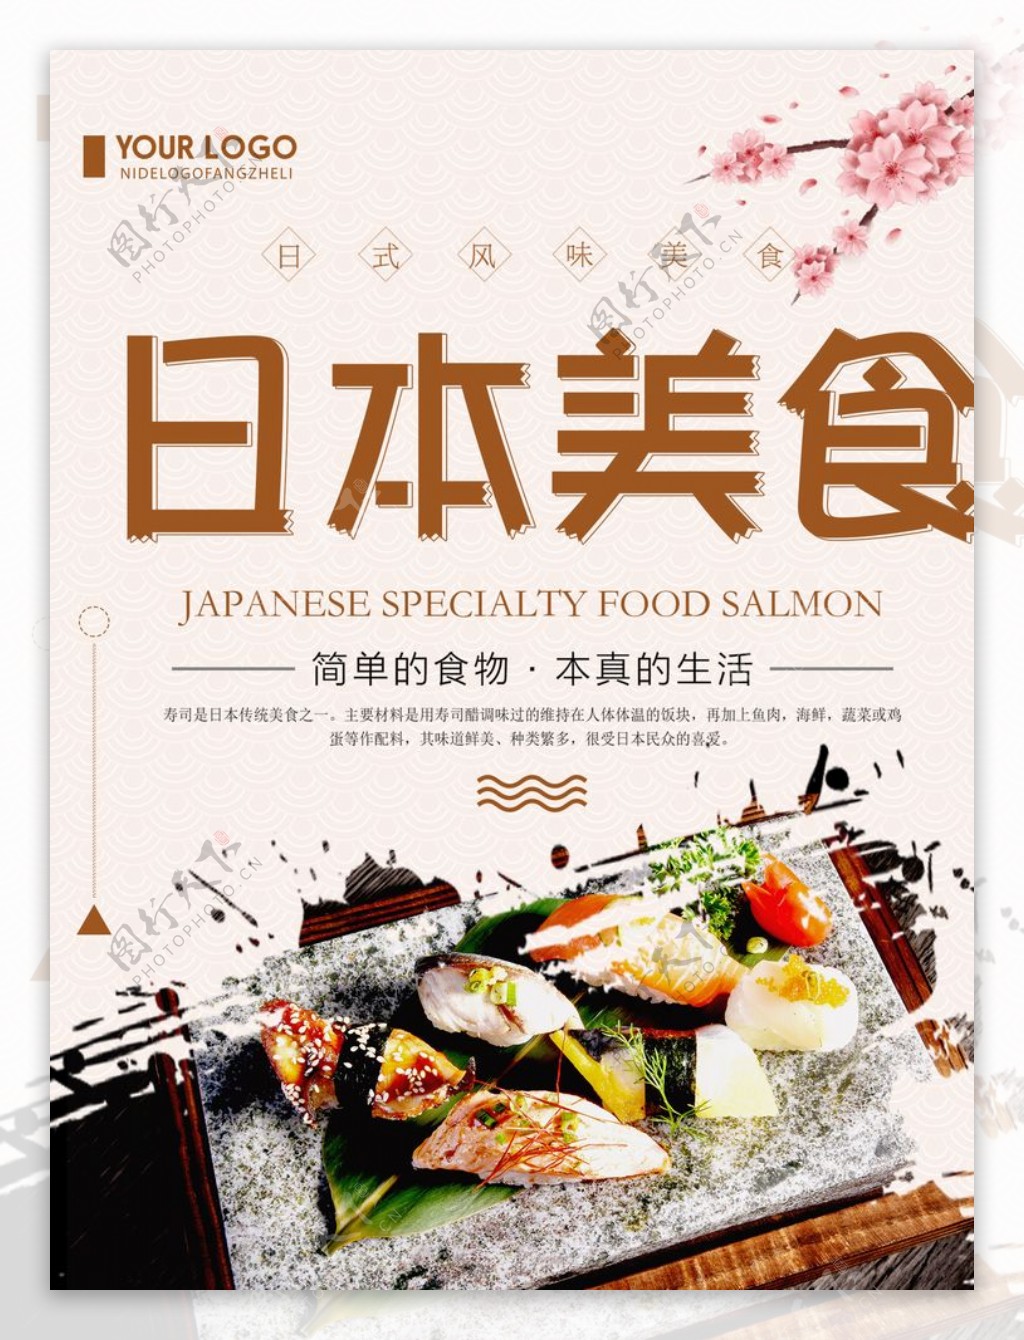 日本美食海报